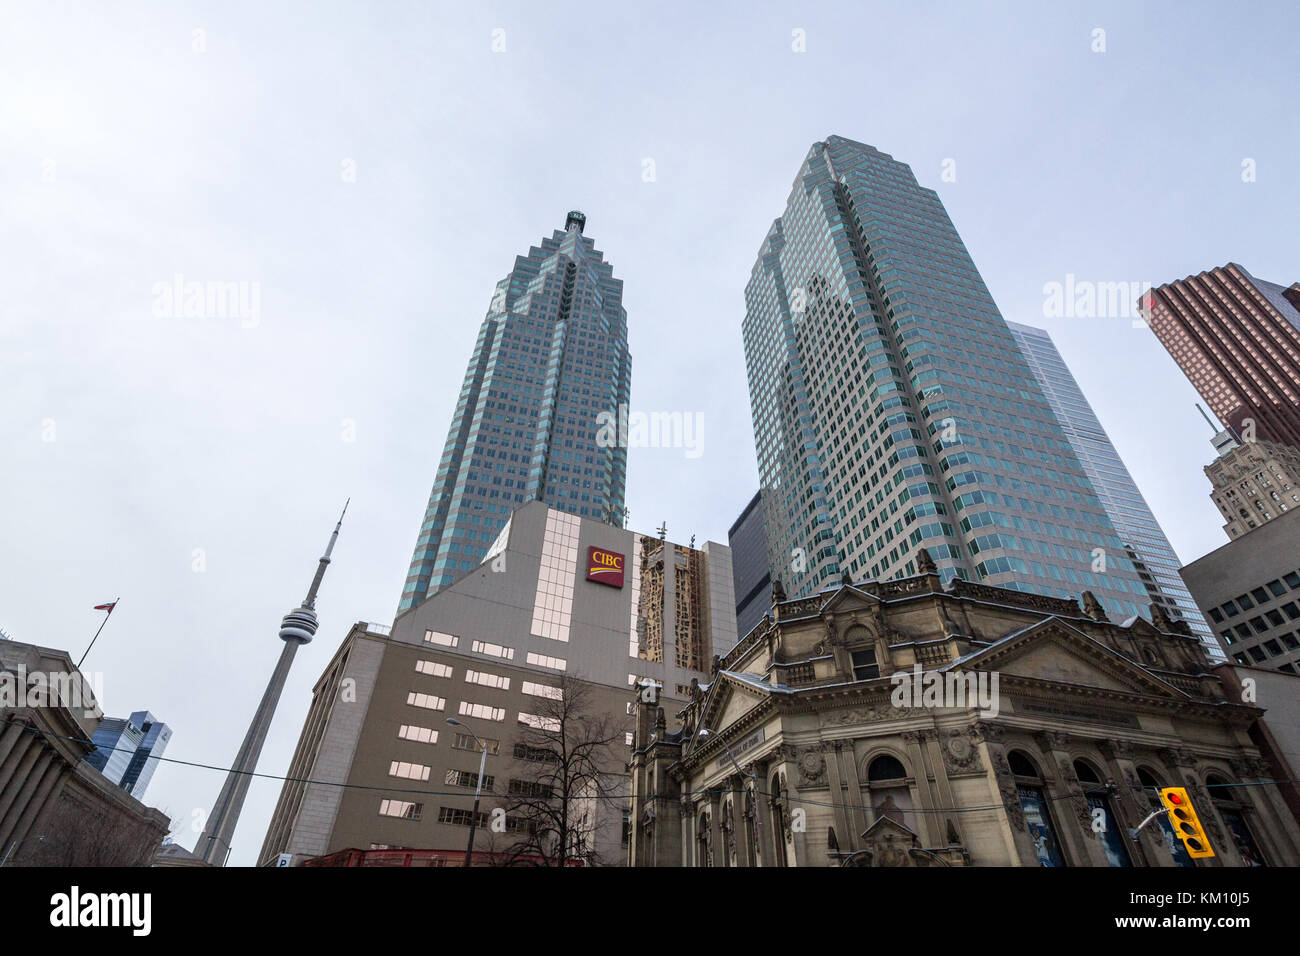 Toronto, Canada - 31 décembre 2016 : la cibc centre avec la tour du CN en arrière-plan dans le centre de Toronto. La Banque CIBC, ou la Banque canadienne impériale de commerce Banque D'Images